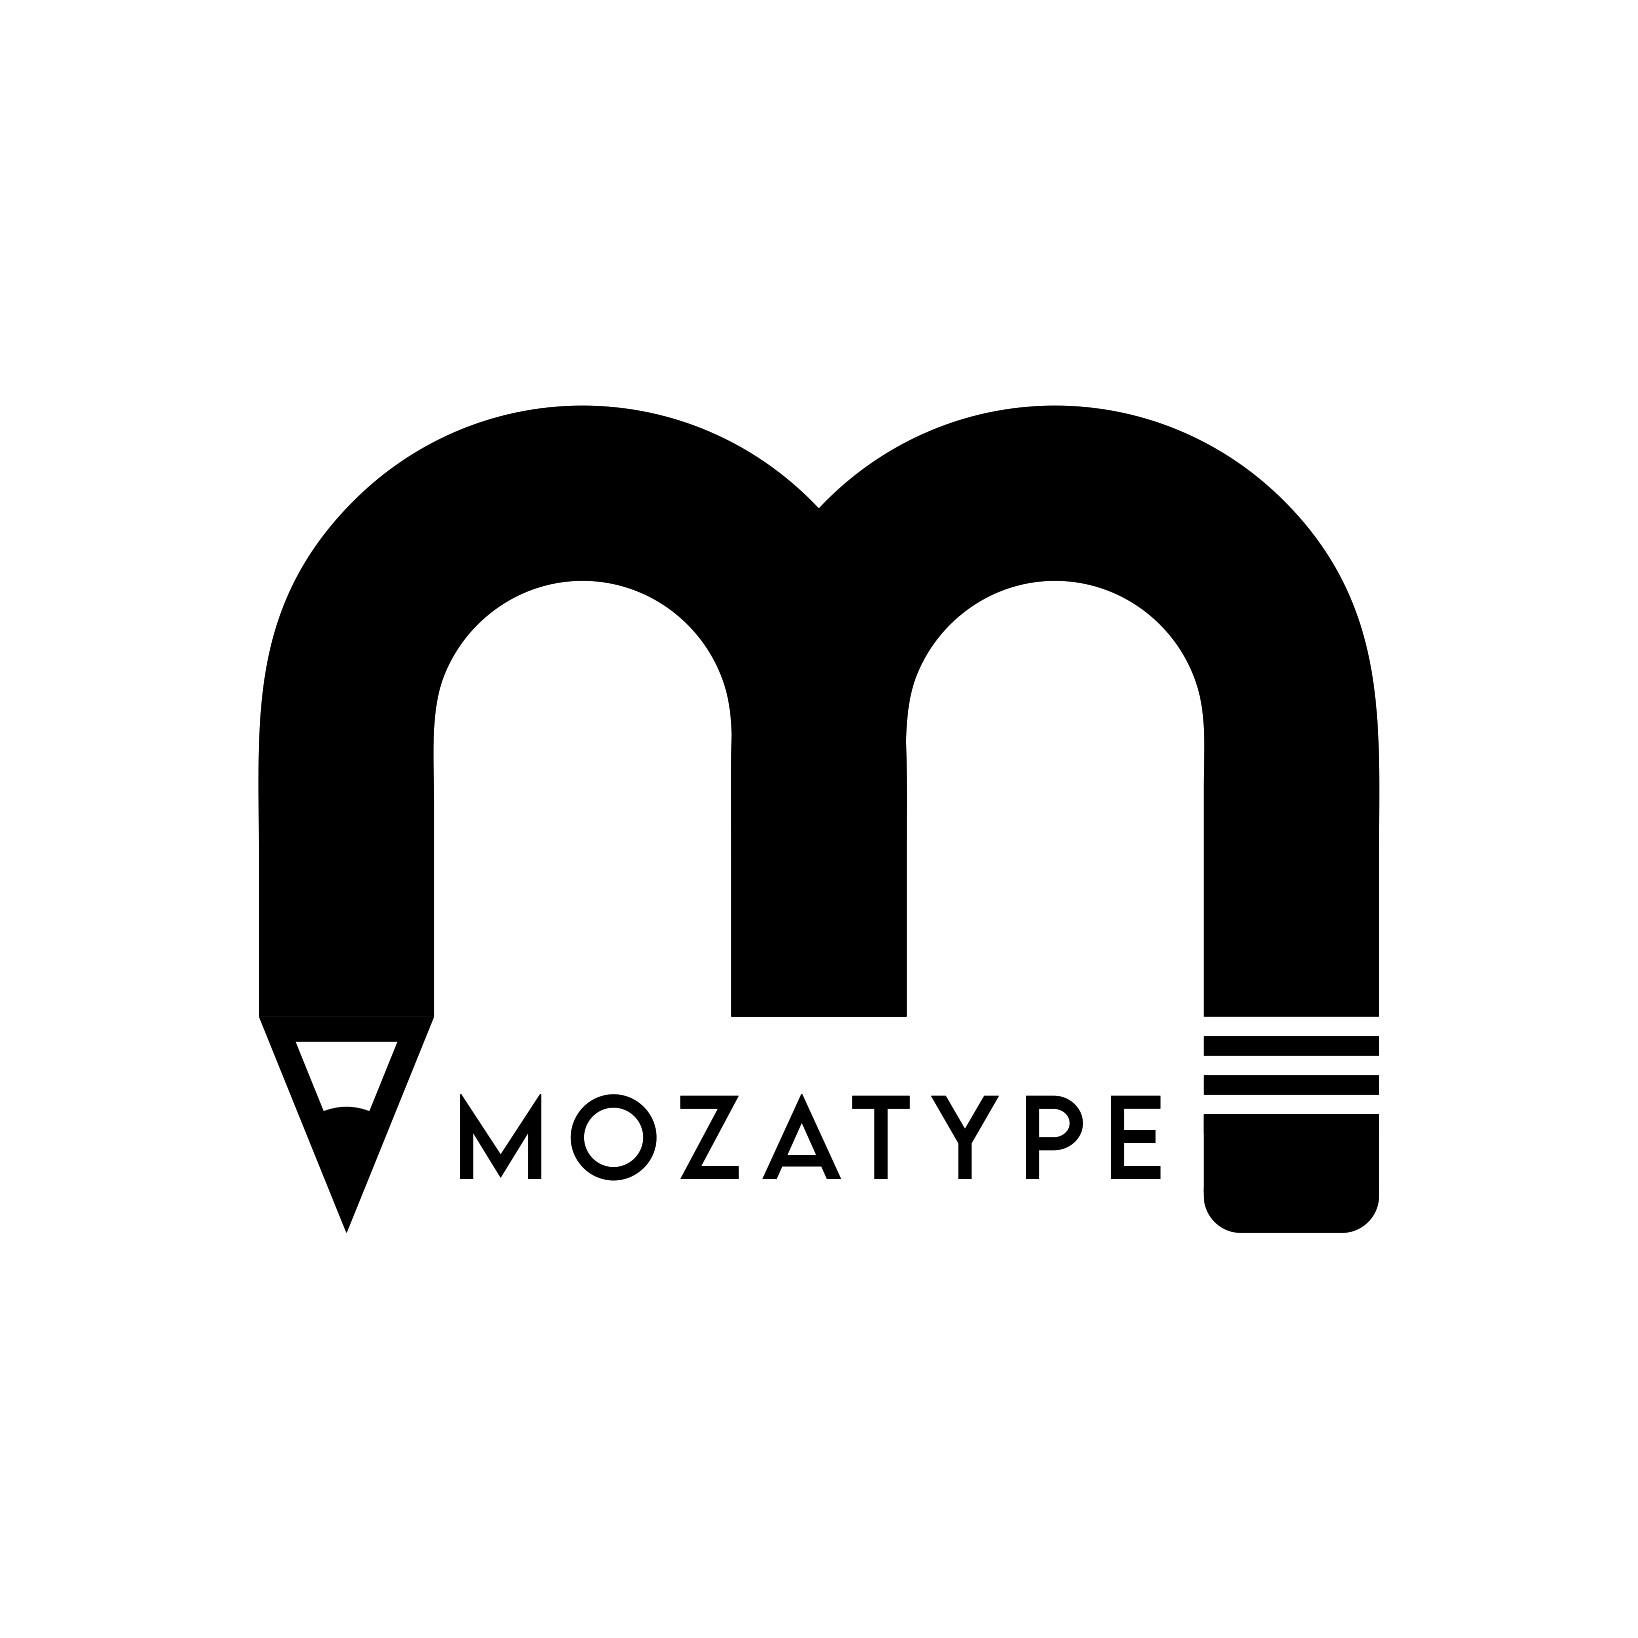 Mozatype's profile picture